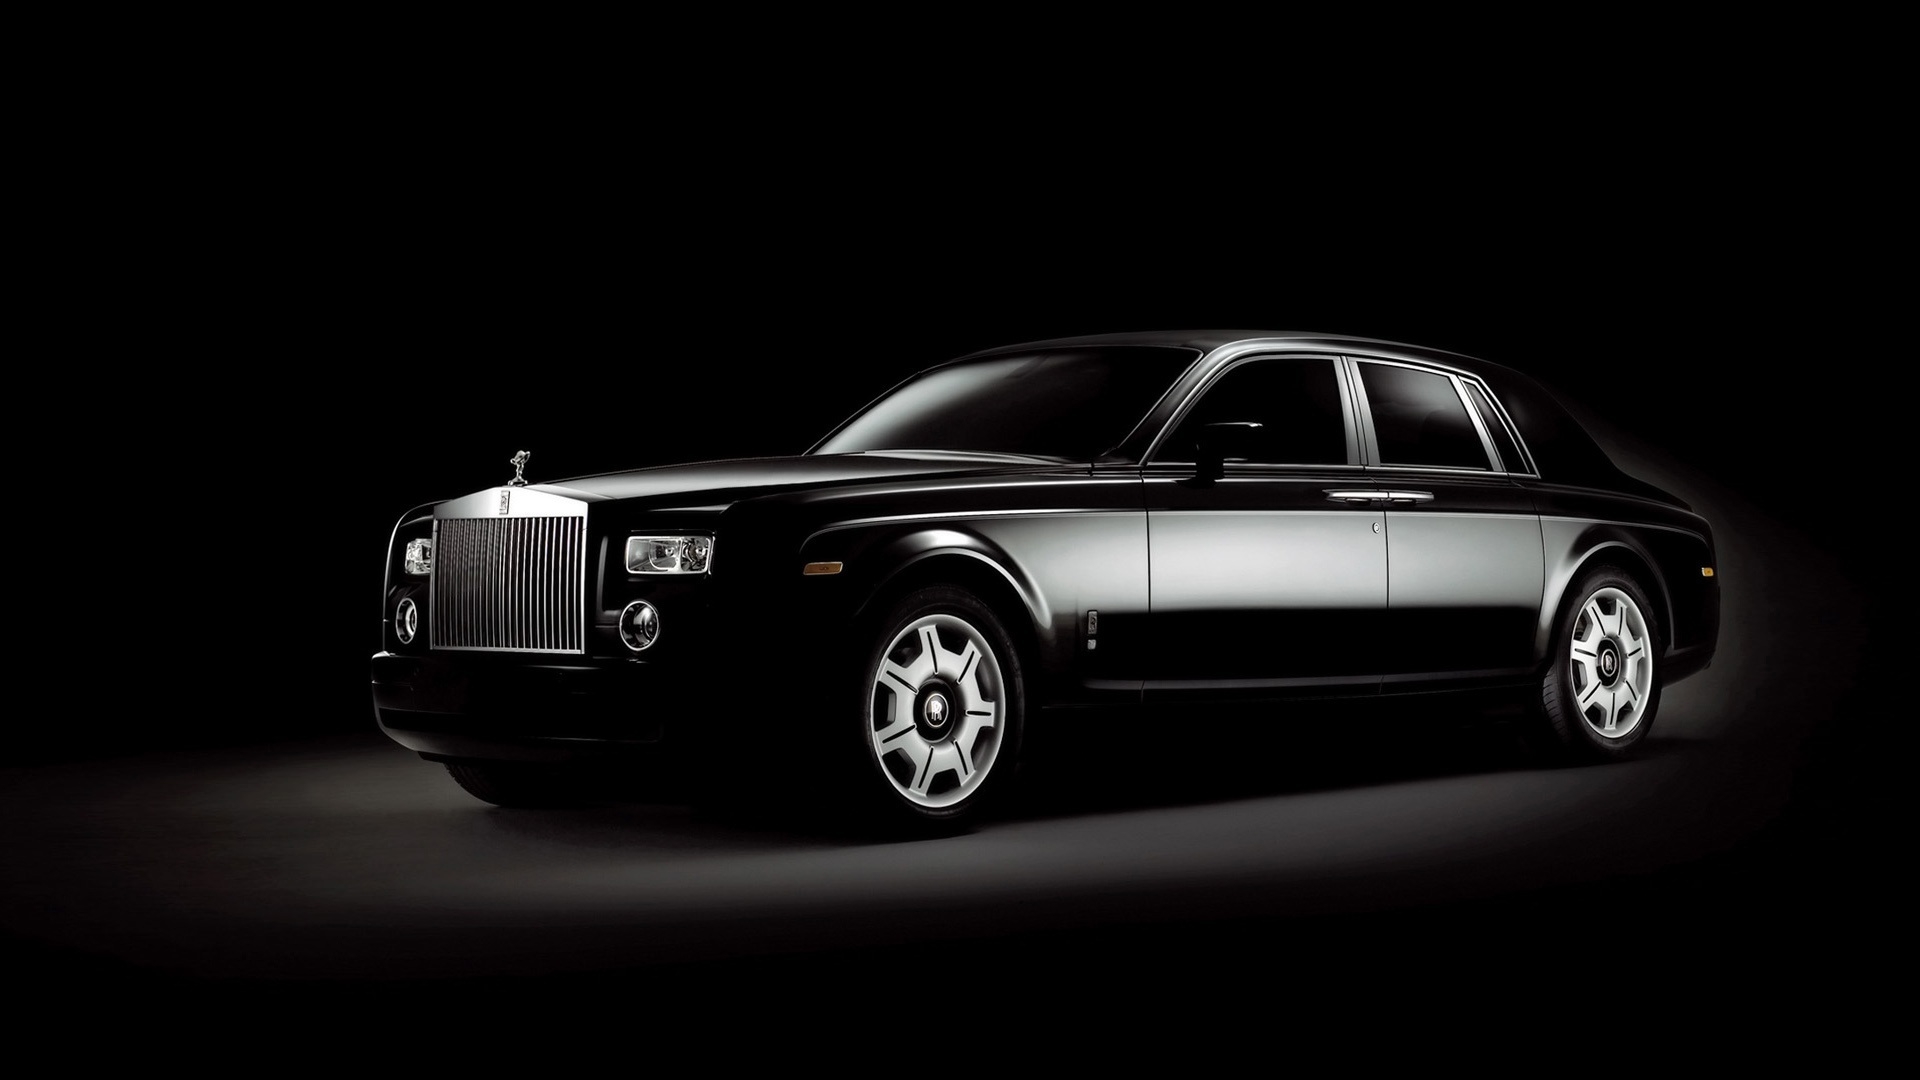 Rolls Royce Phantom Black for 1920 x 1080 HDTV 1080p resolution